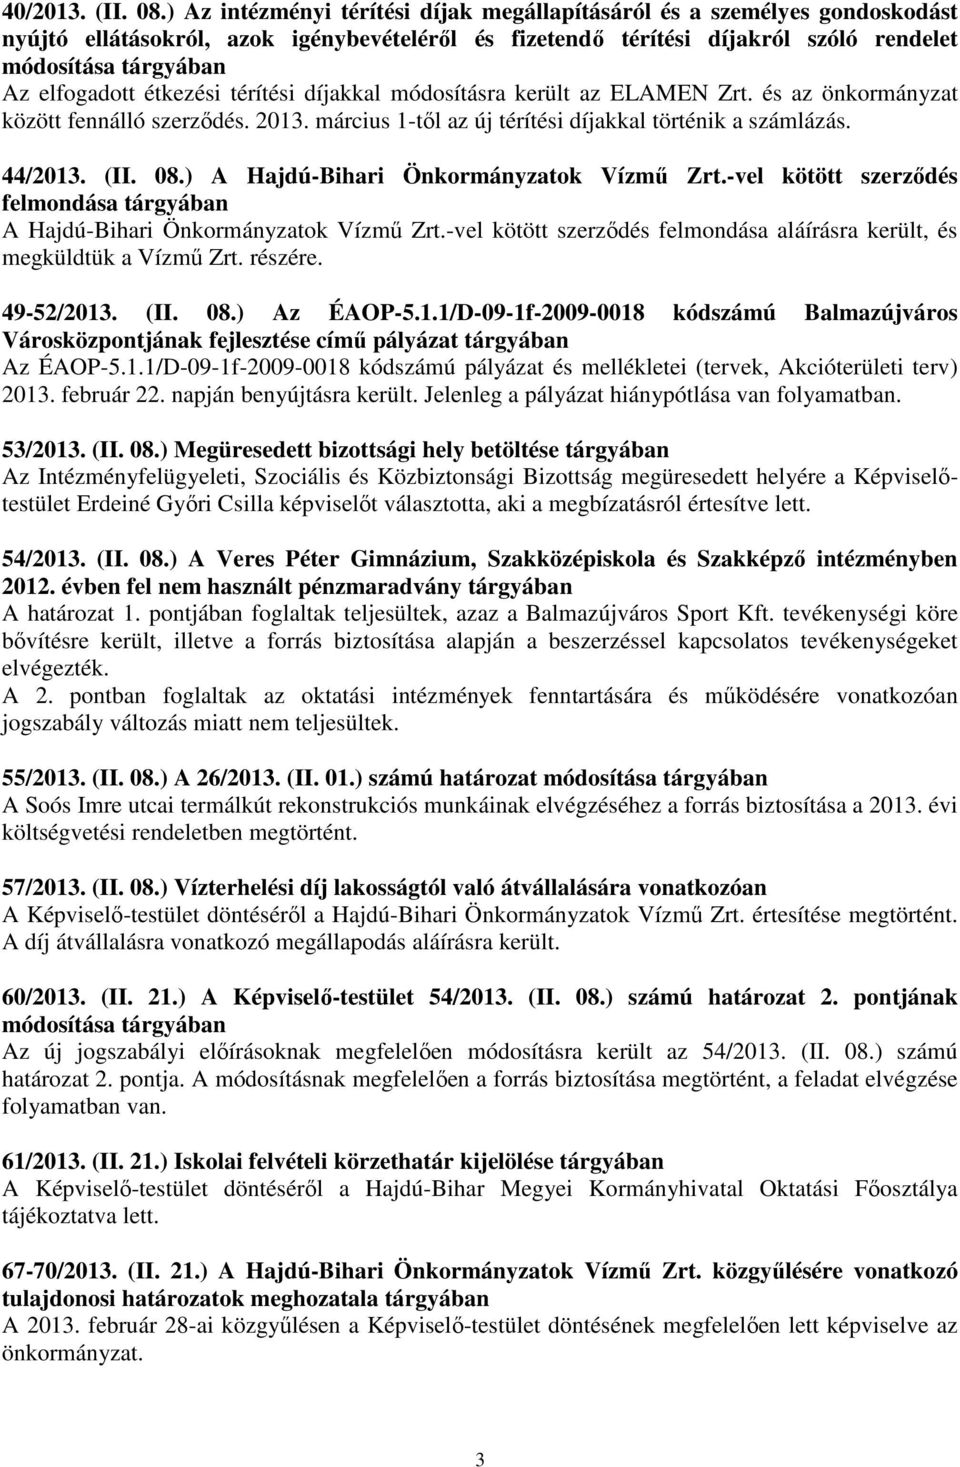 étkezési térítési díjakkal módosításra került az ELAMEN Zrt. és az önkormányzat között fennálló szerzıdés. 2013. március 1-tıl az új térítési díjakkal történik a számlázás. 44/2013. (II. 08.